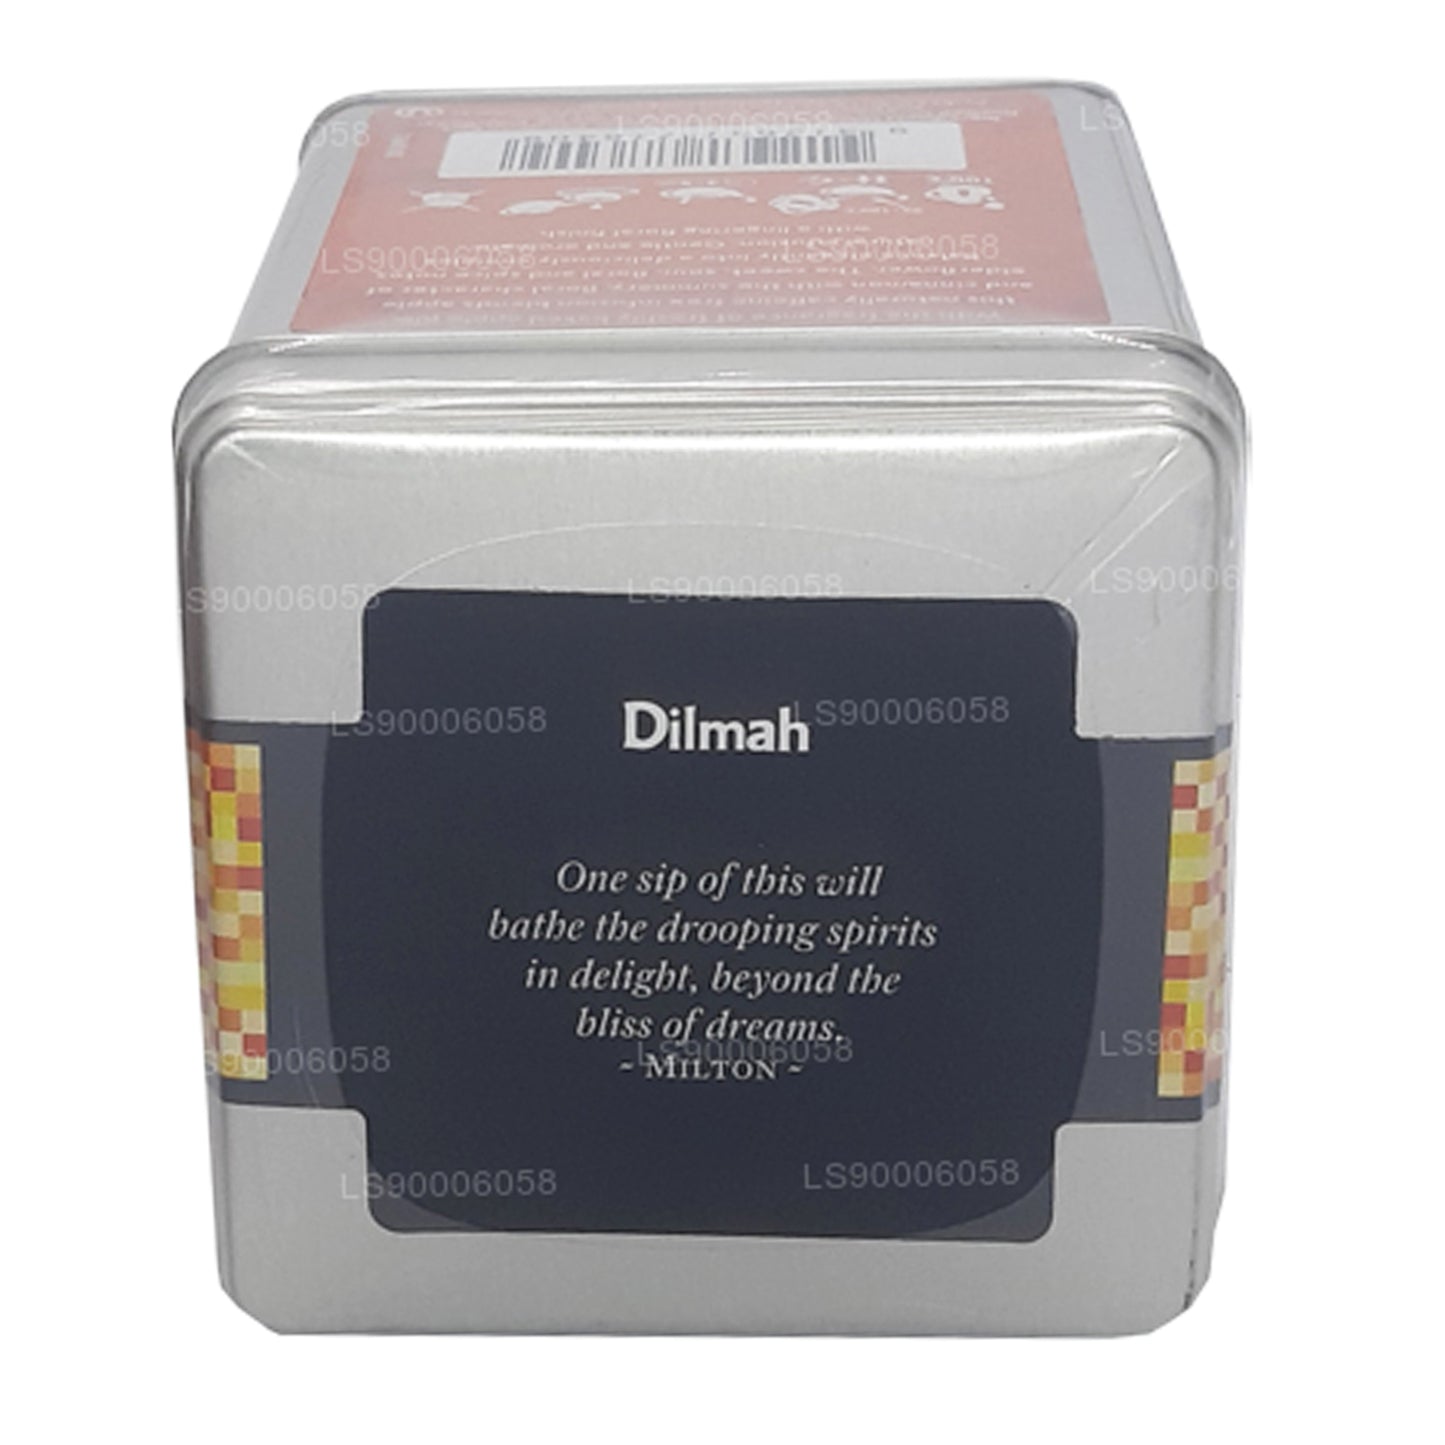 Dilmah t-Series Elderflower with Cinnamon and Apple (130g)